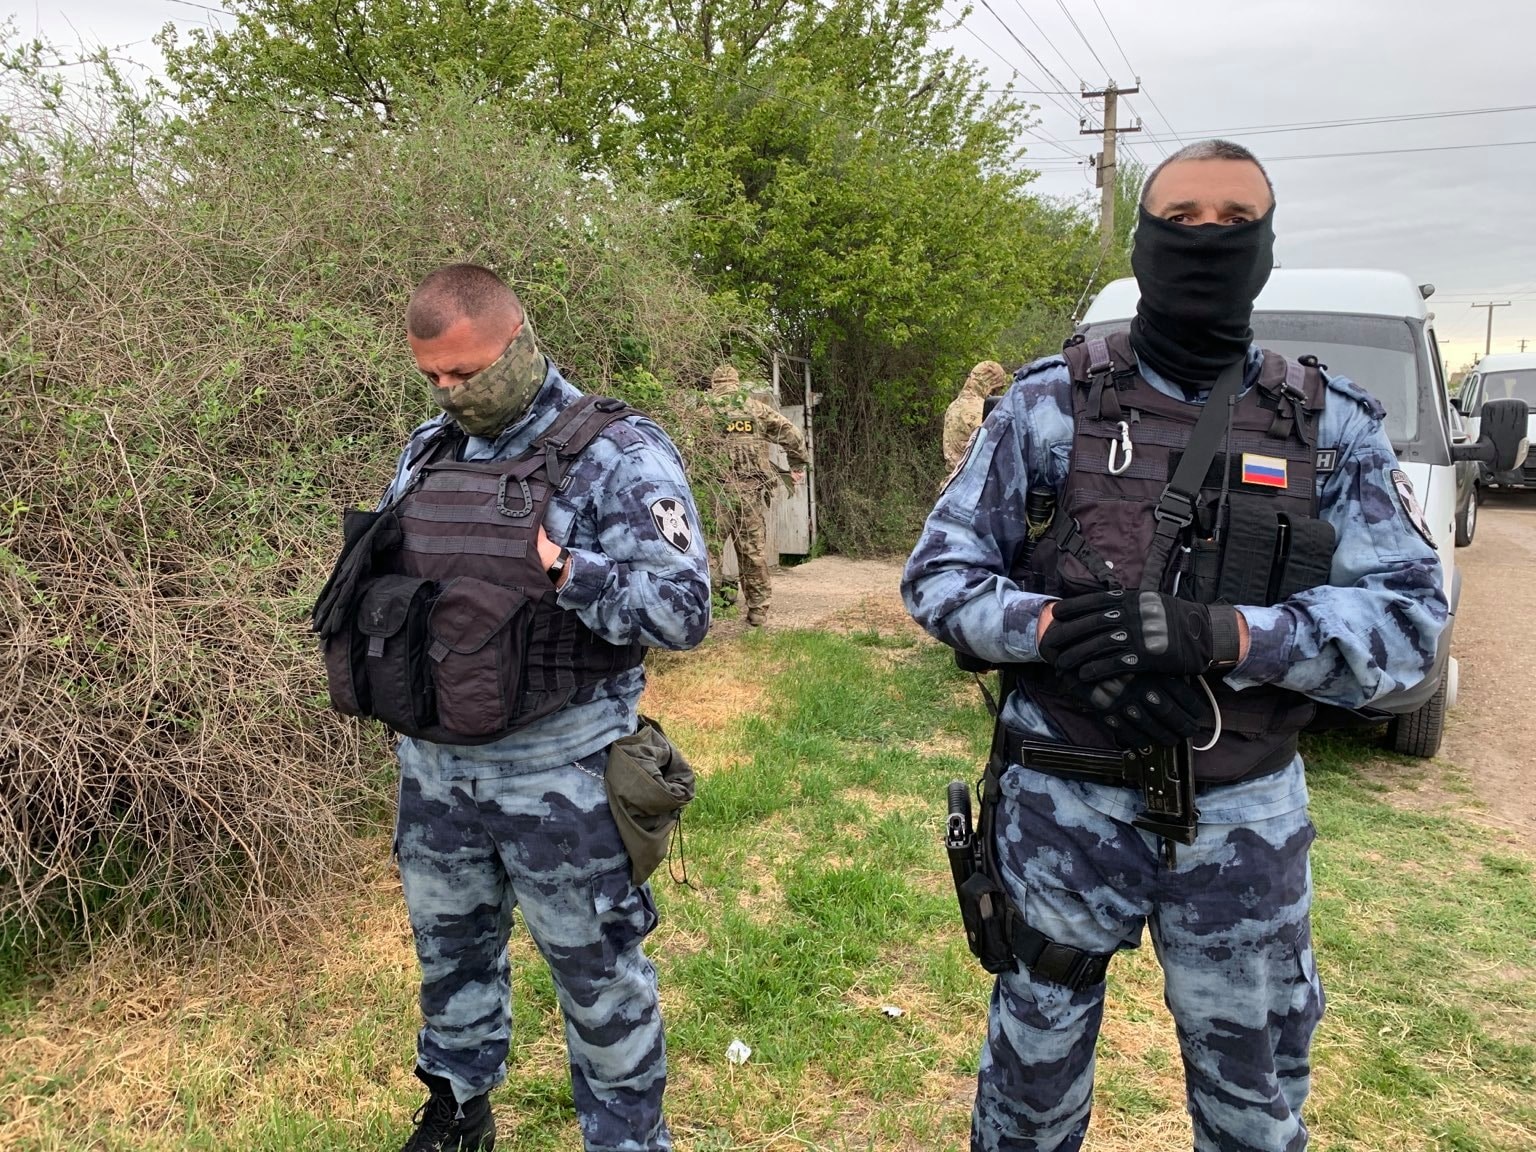 В Крыму российские оккупанты во время обыска убили человека